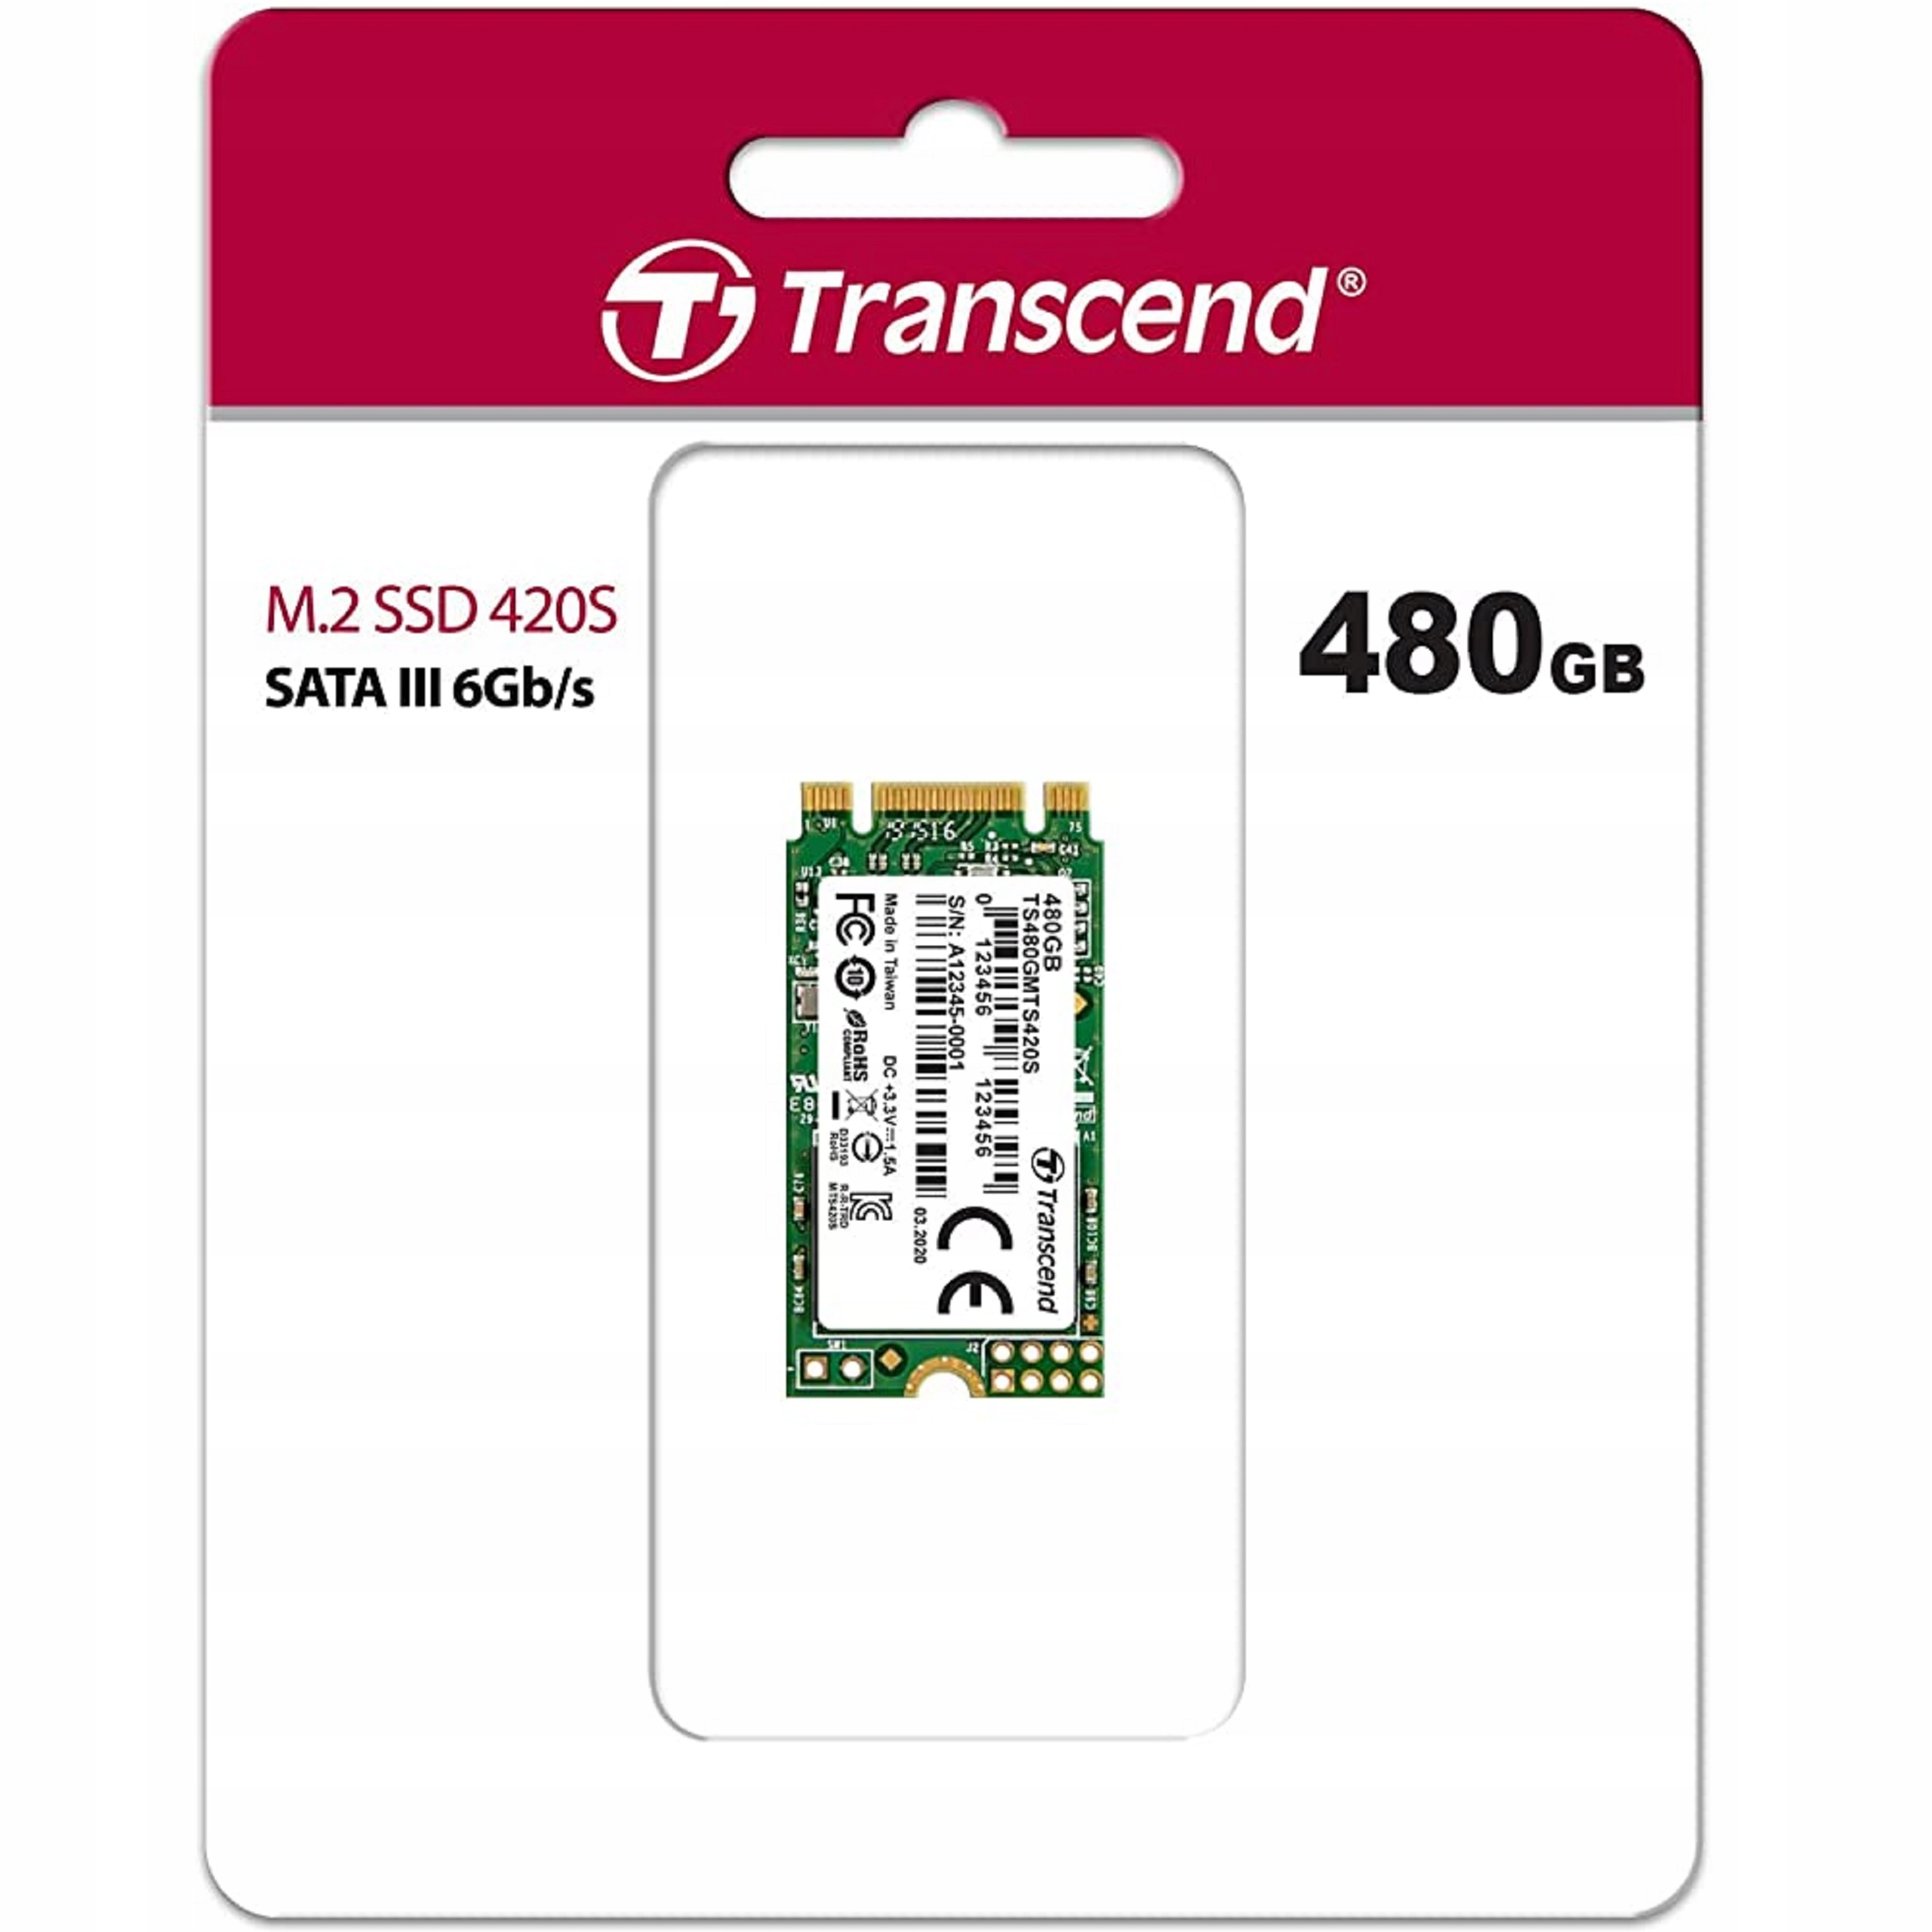 SSD Ceny, opinie, sklepy - 500gb Ssd Dysk Sata Dyski w Transcend